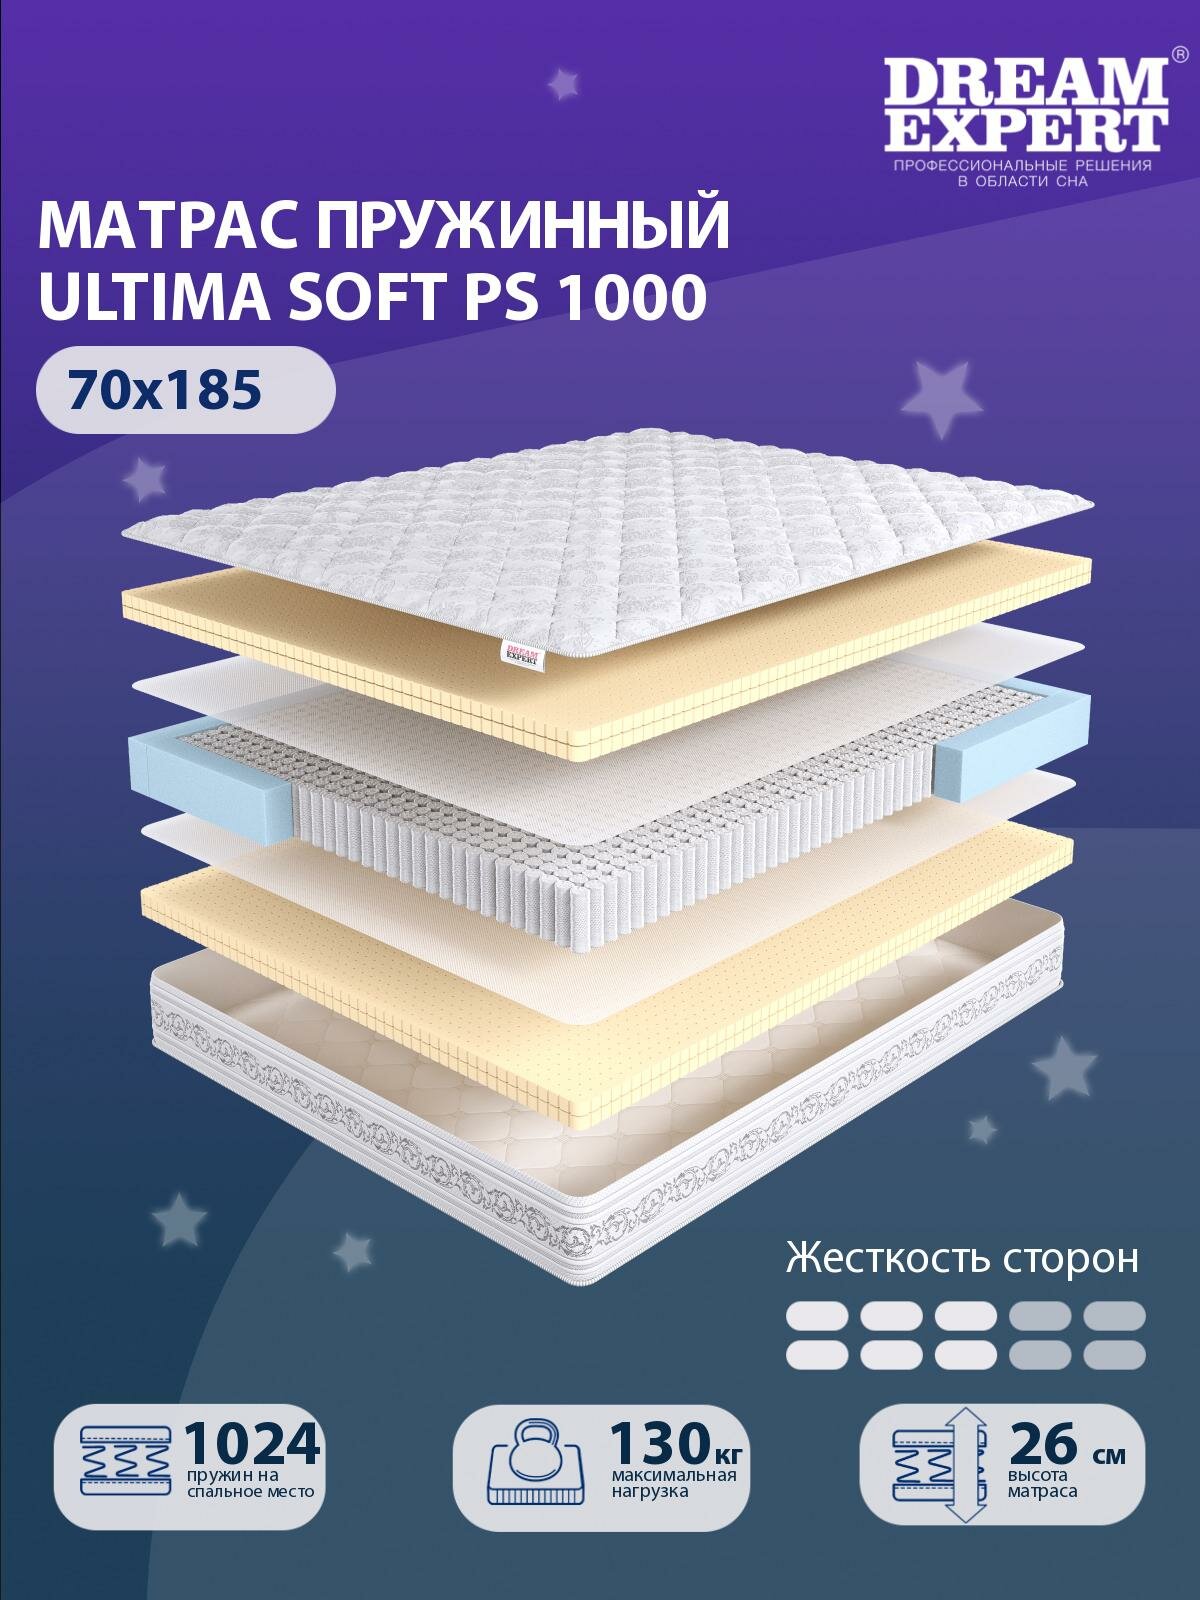 Матрас DreamExpert Ultima Soft PS1000 средней жесткости, детский, независимый пружинный блок, на кровать 70x185